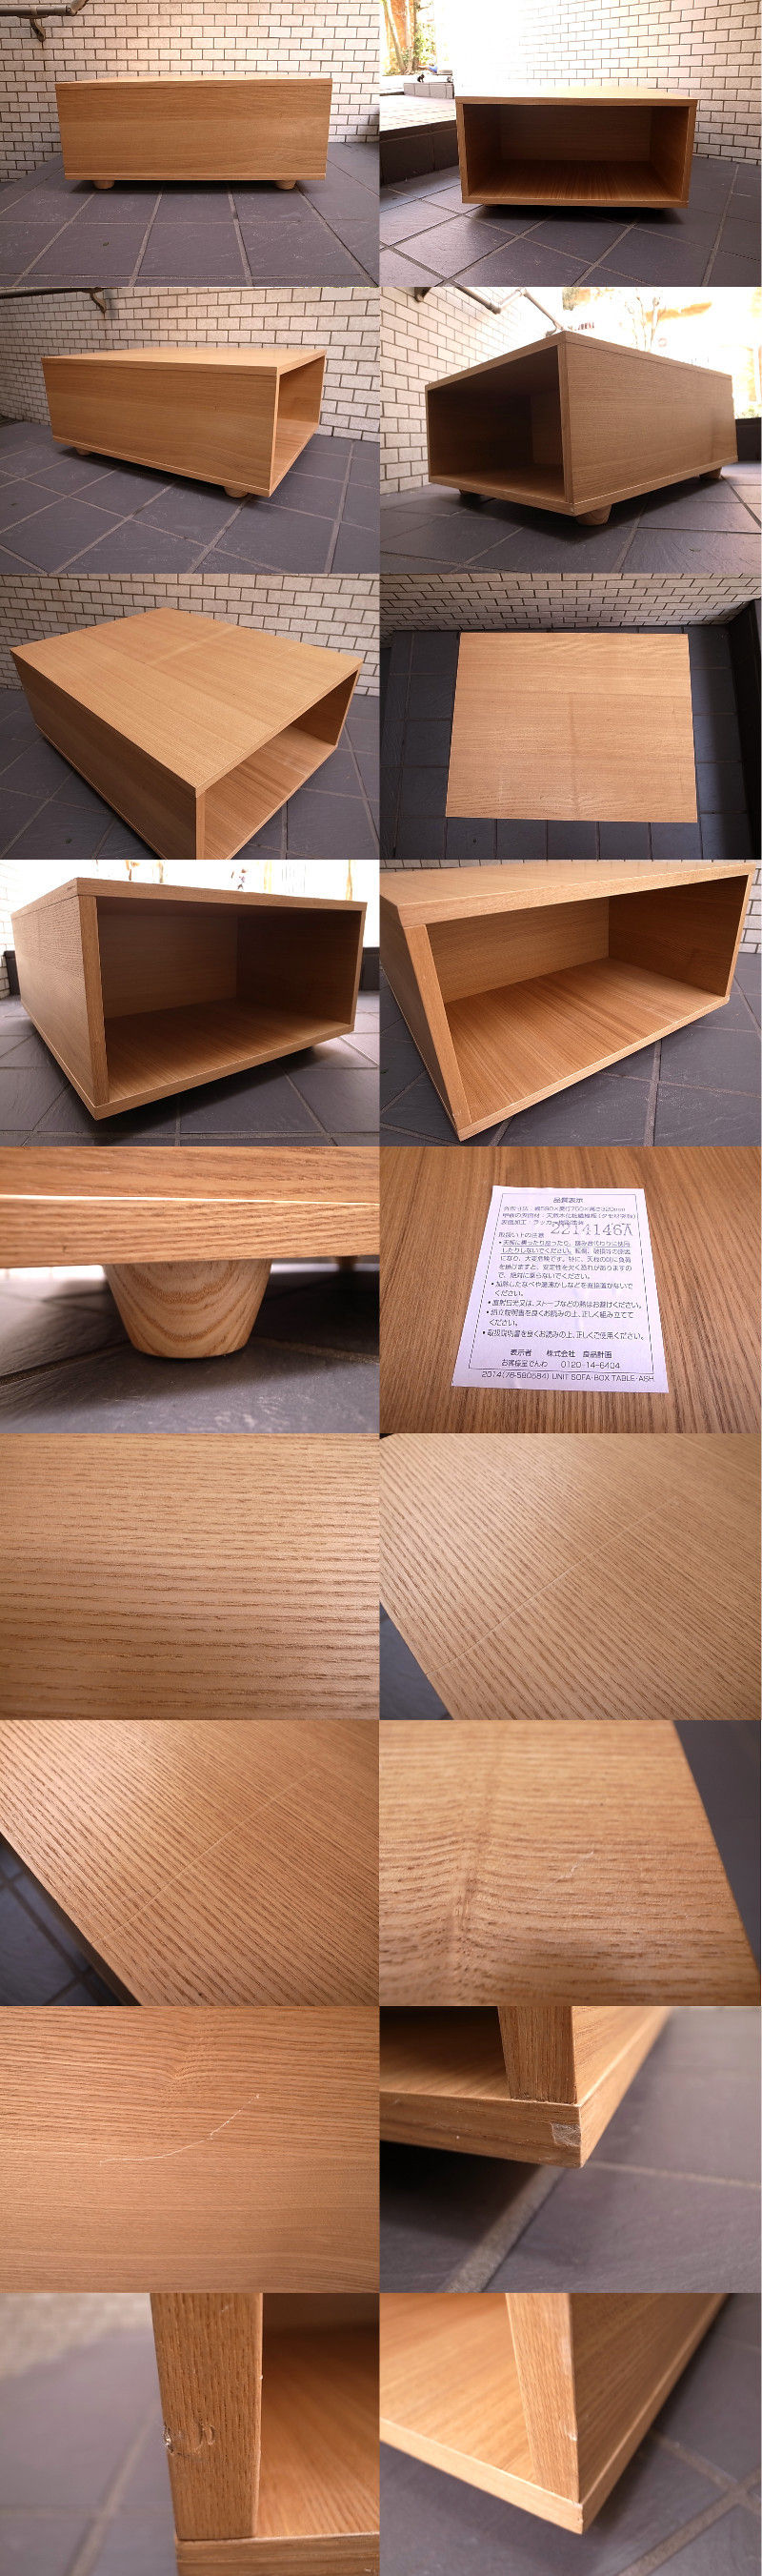 無印良品 ユニット ソファ ボックス テーブル タモ材 □